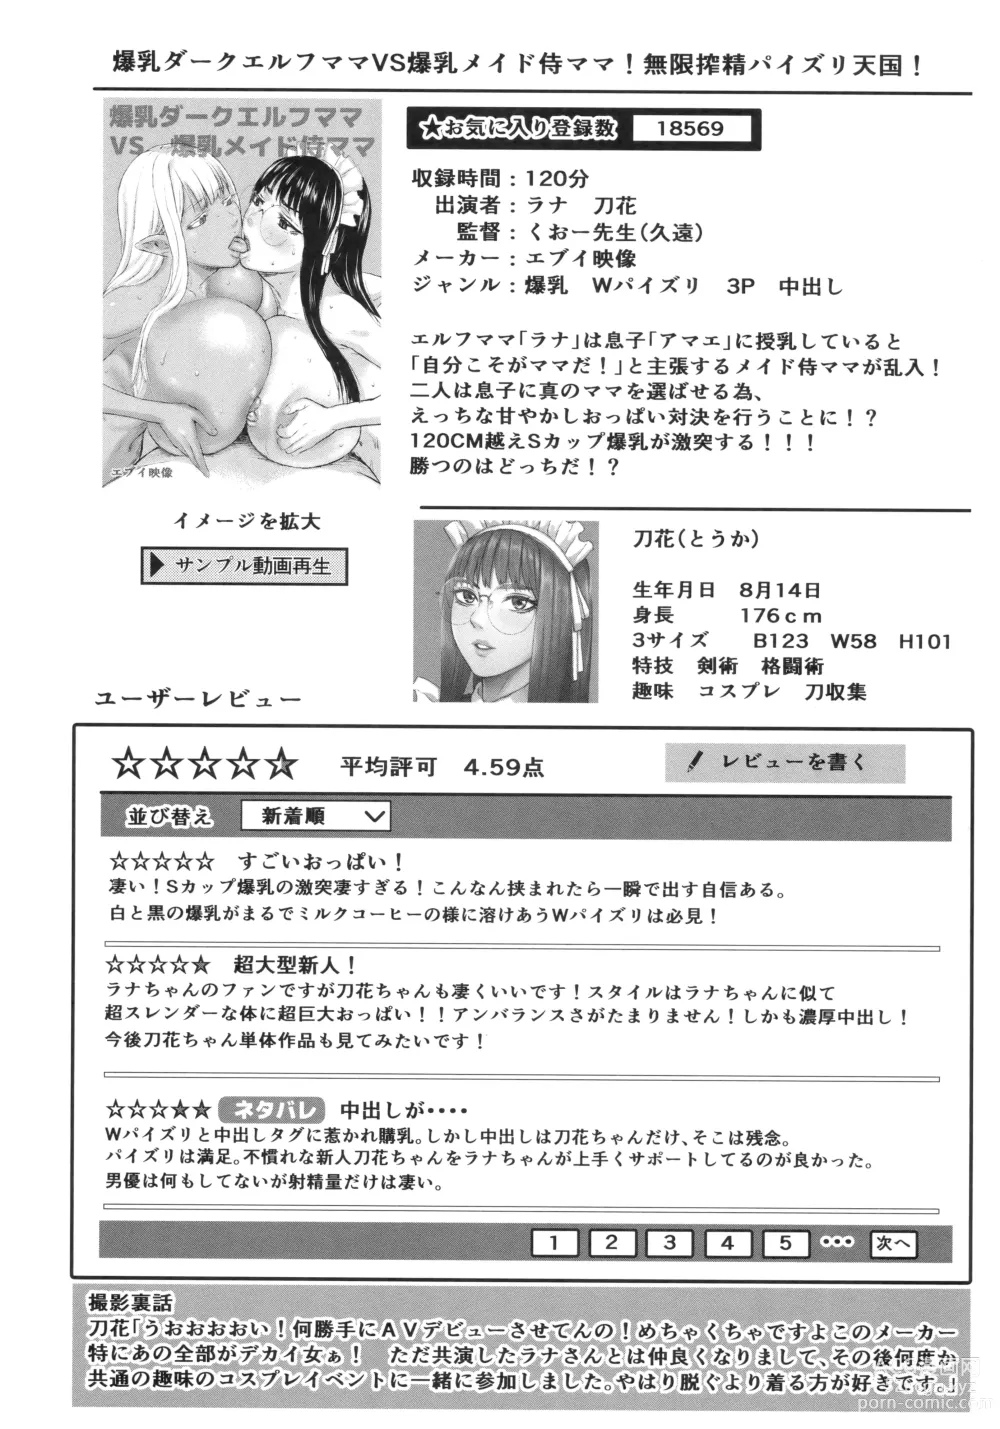 Page 221 of manga AV Family + bonuses